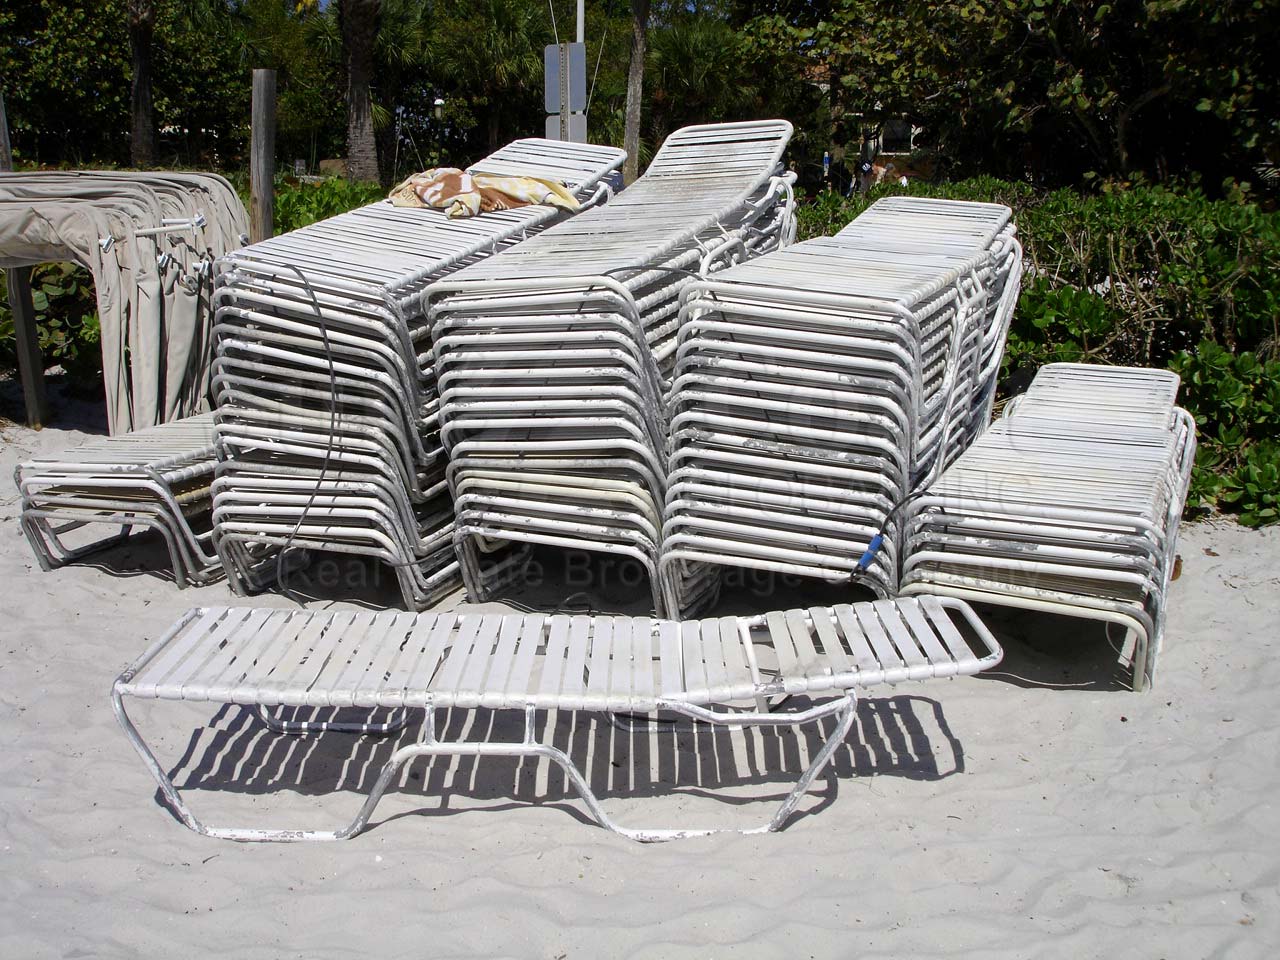 VANDERBILT BEACH Chairs